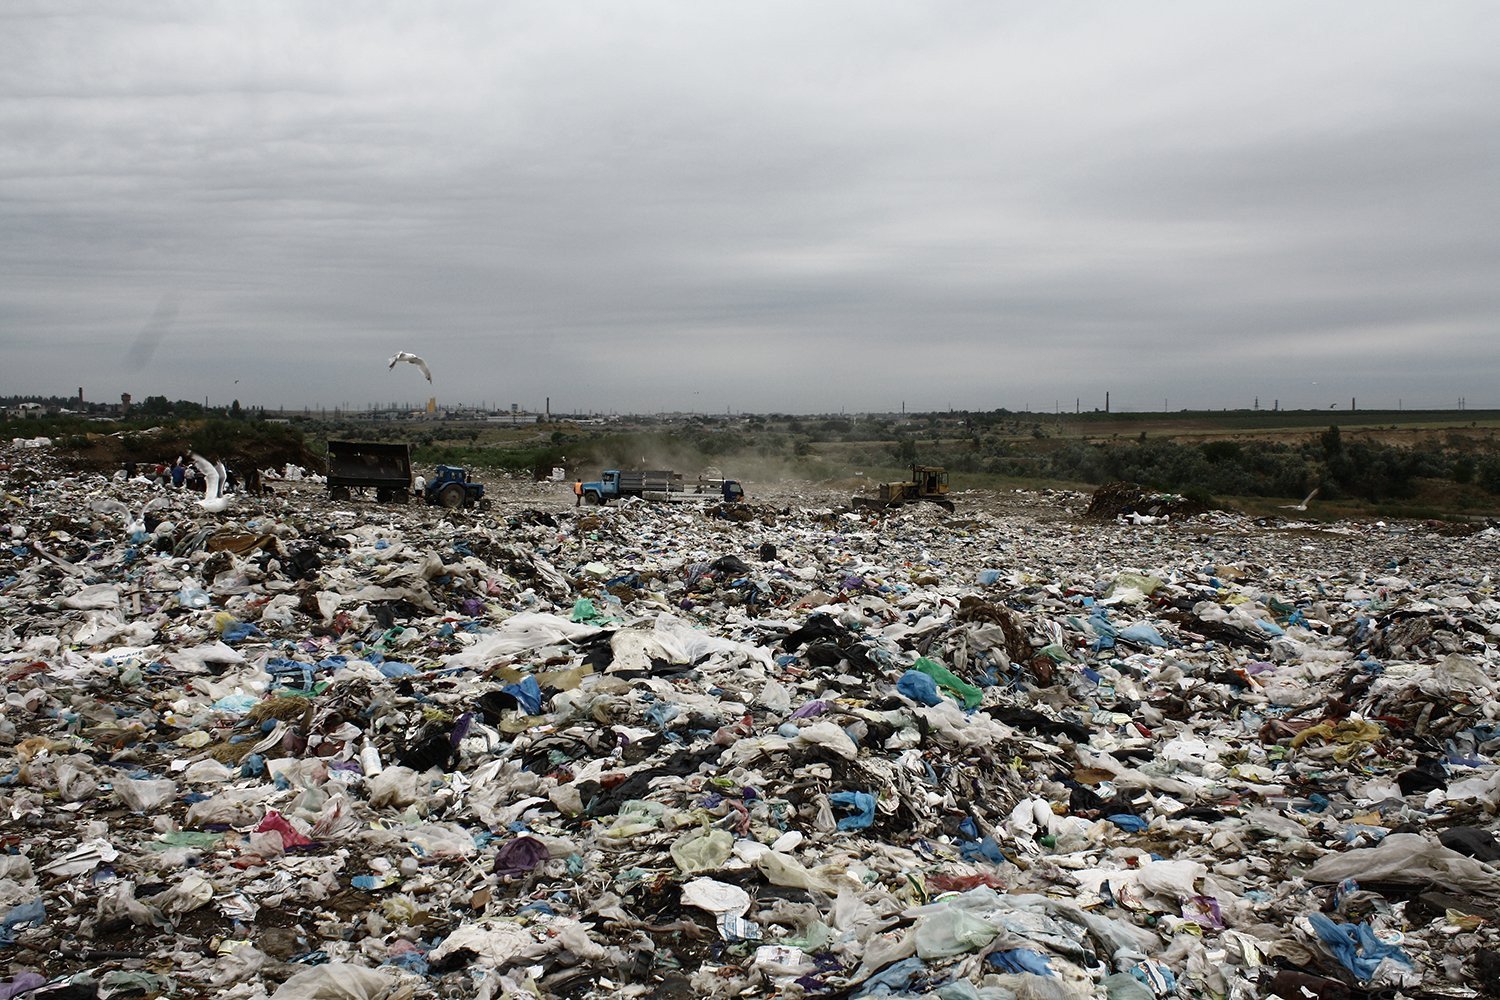 Херсонщина является одной из самых грязных областей Украины — председатель Государственной экологической инспекции